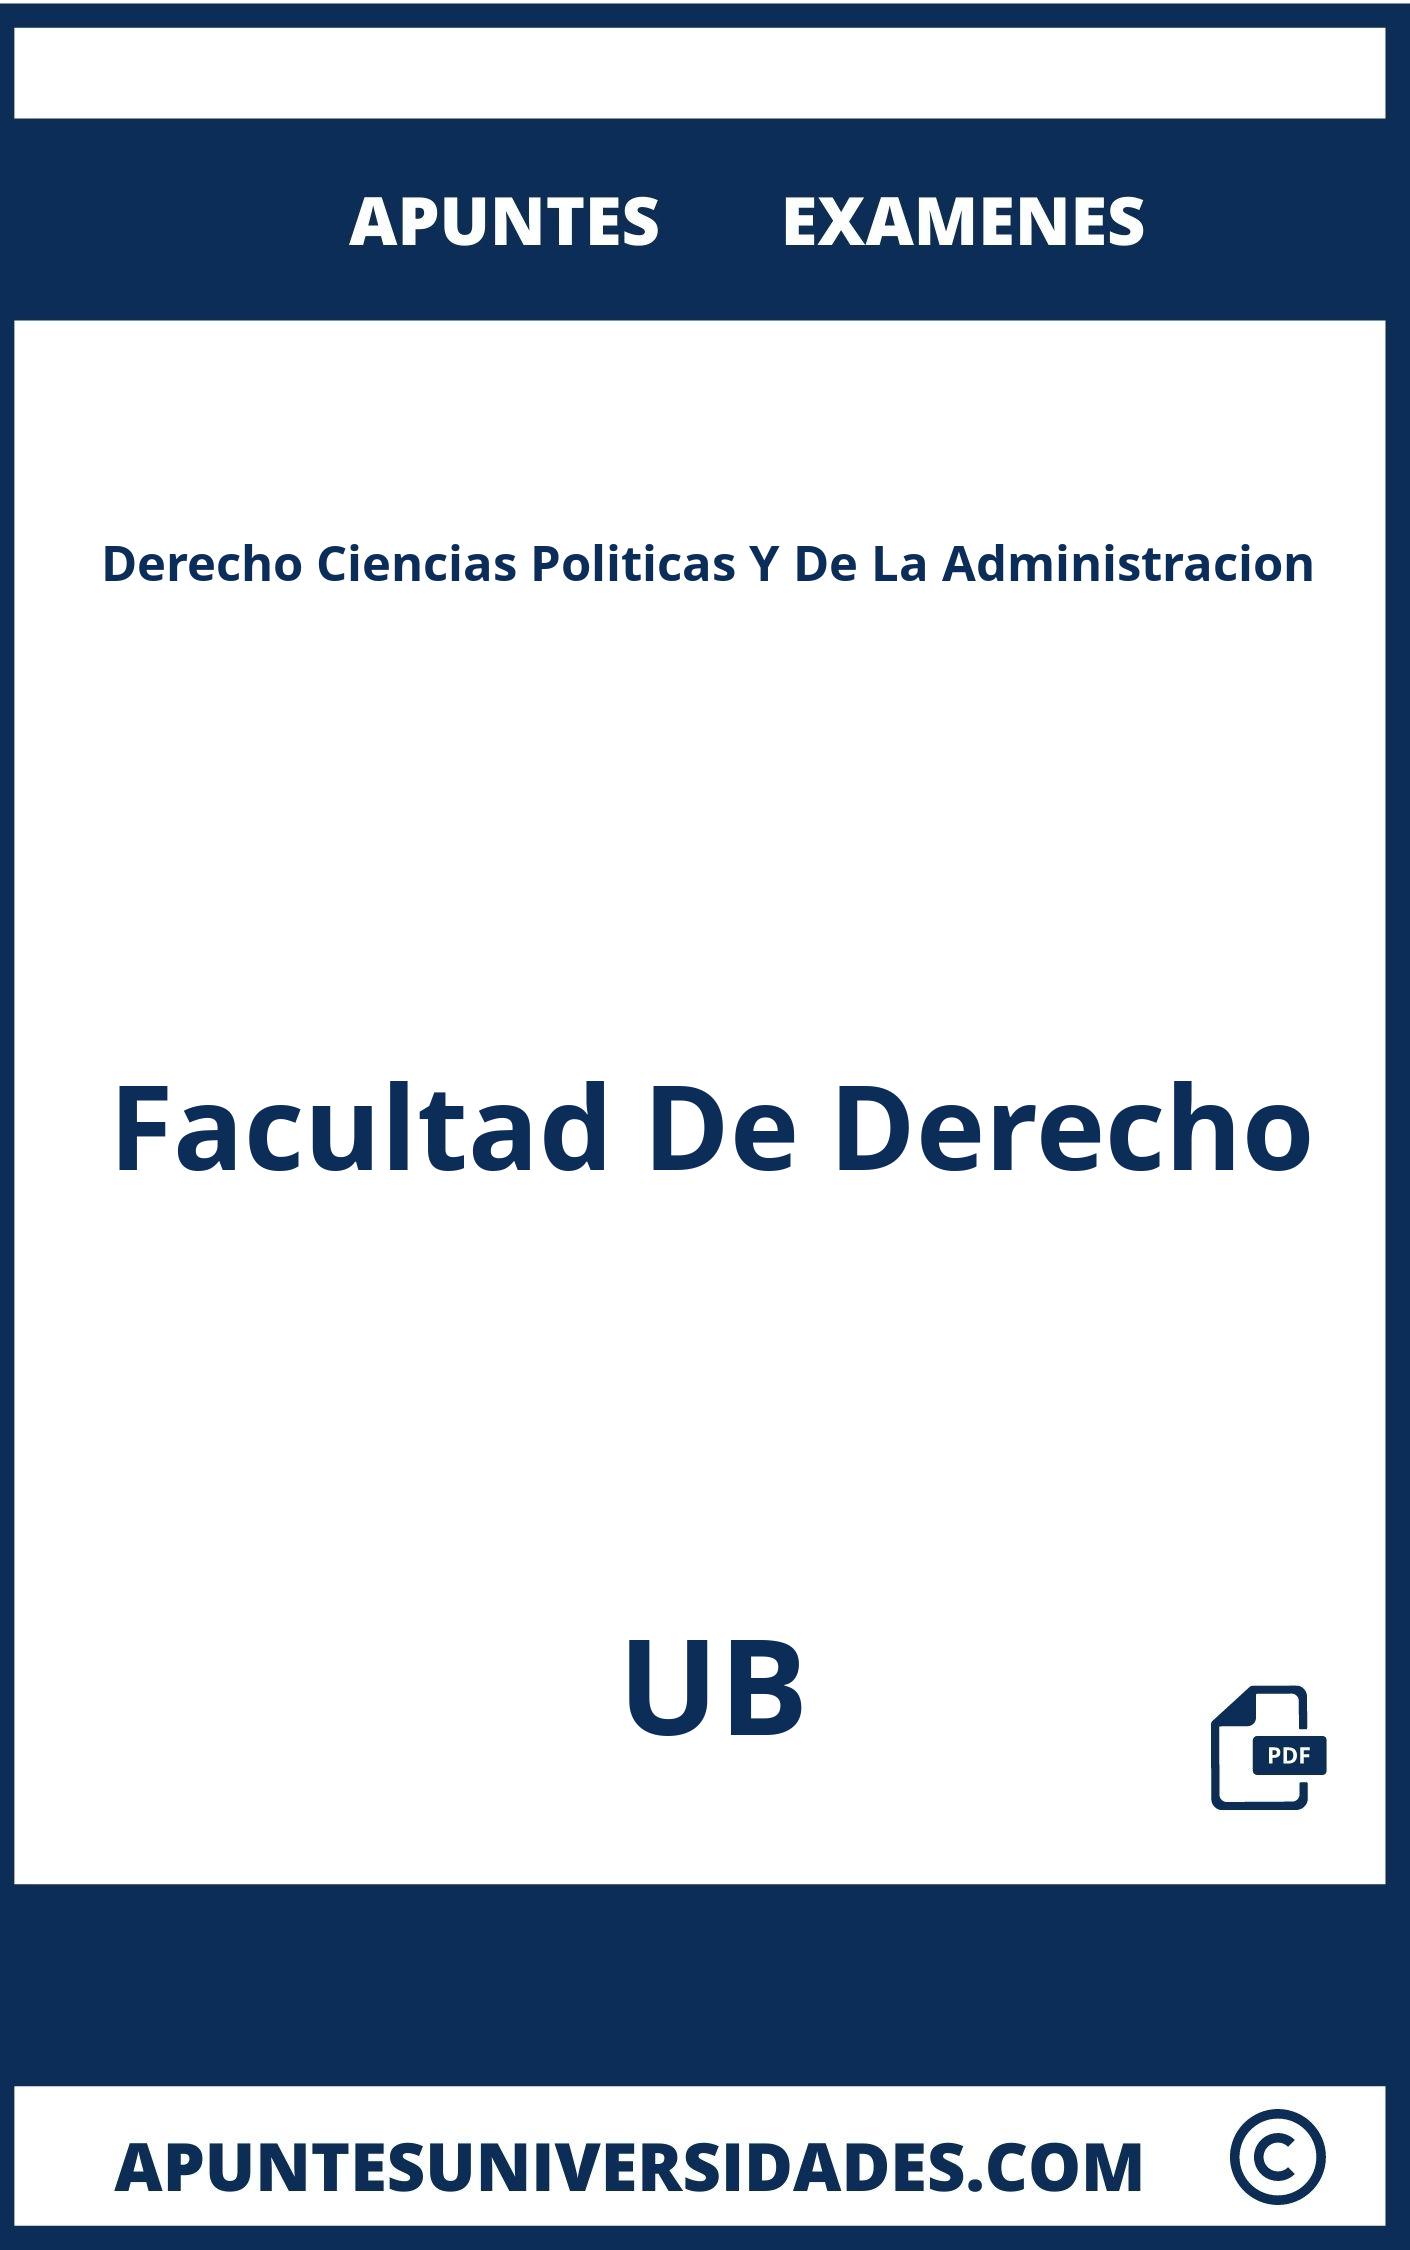 Examenes Derecho Ciencias Politicas Y De La Administracion UB y Apuntes